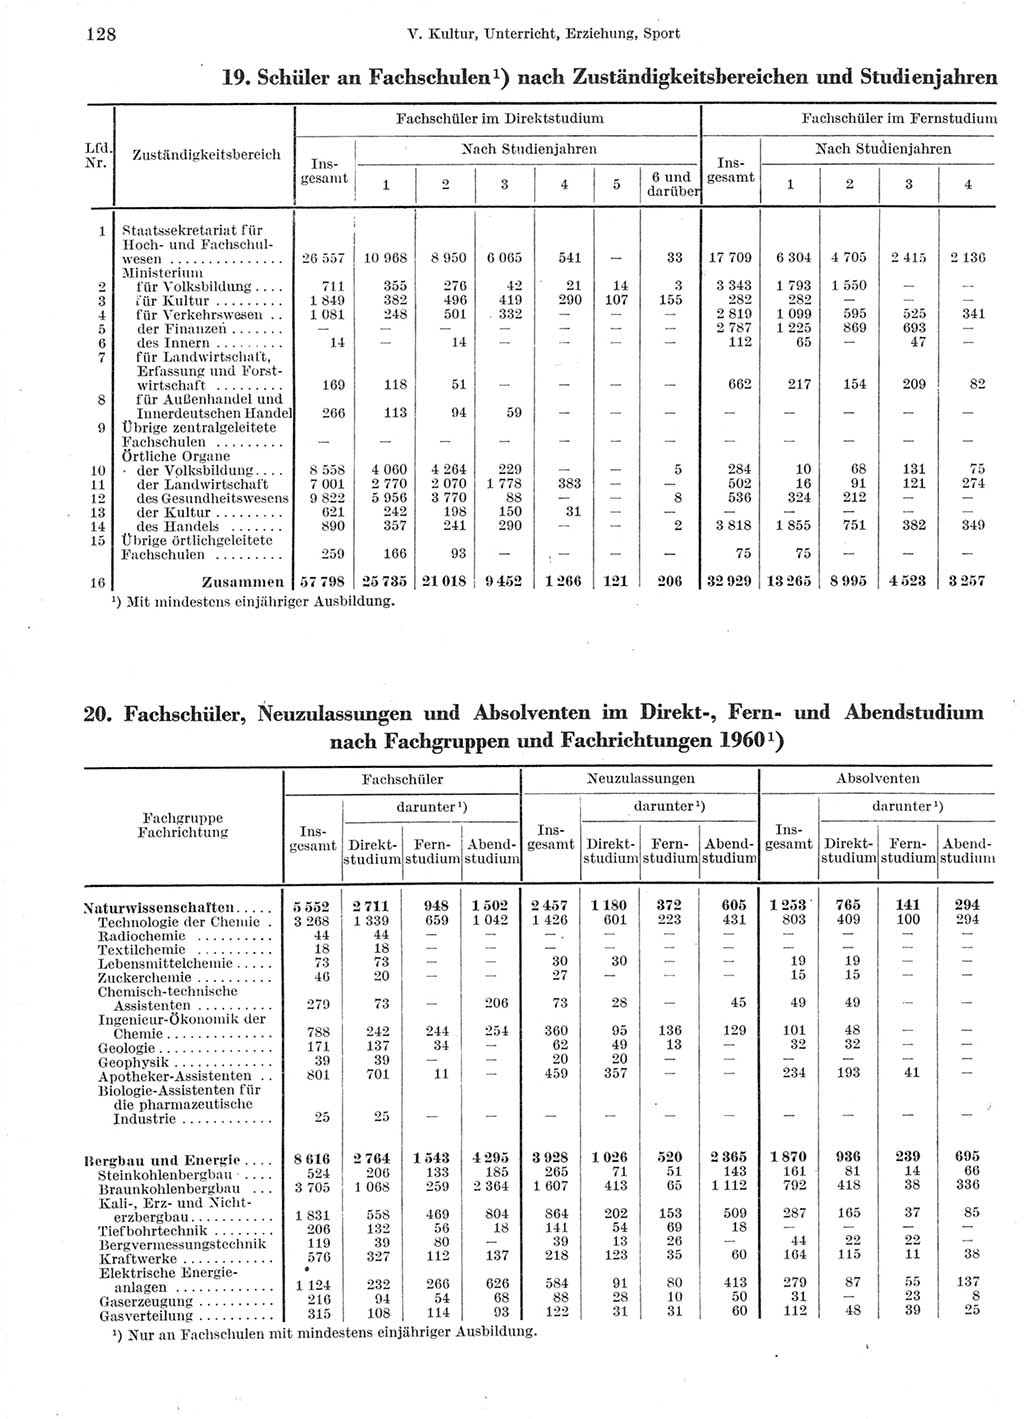 Statistisches Jahrbuch der Deutschen Demokratischen Republik (DDR) 1960-1961, Seite 128 (Stat. Jb. DDR 1960-1961, S. 128)